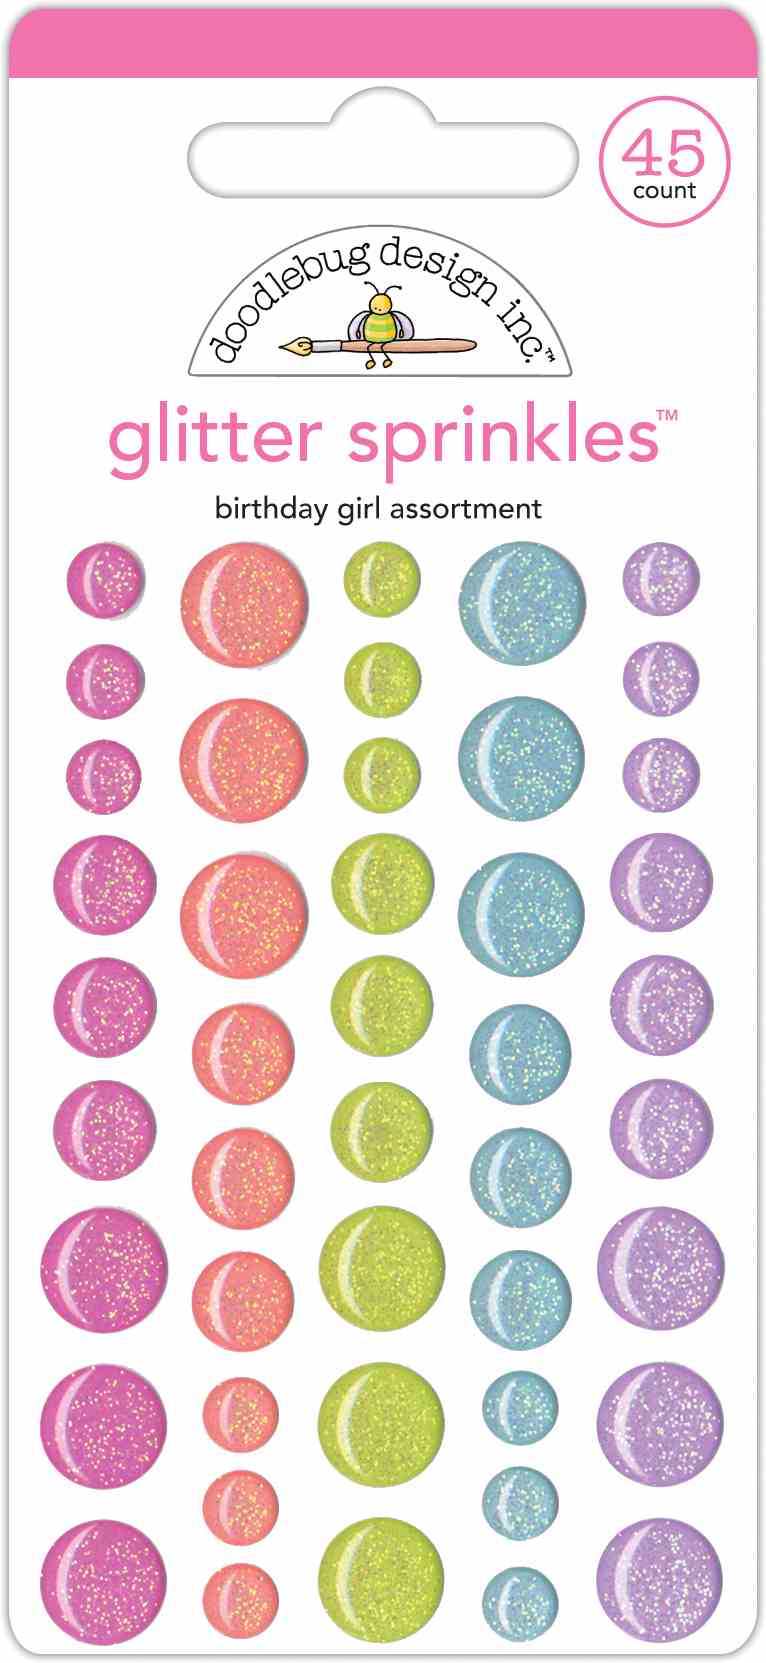 Birthday Girl Assortment Glitter Sprinkles